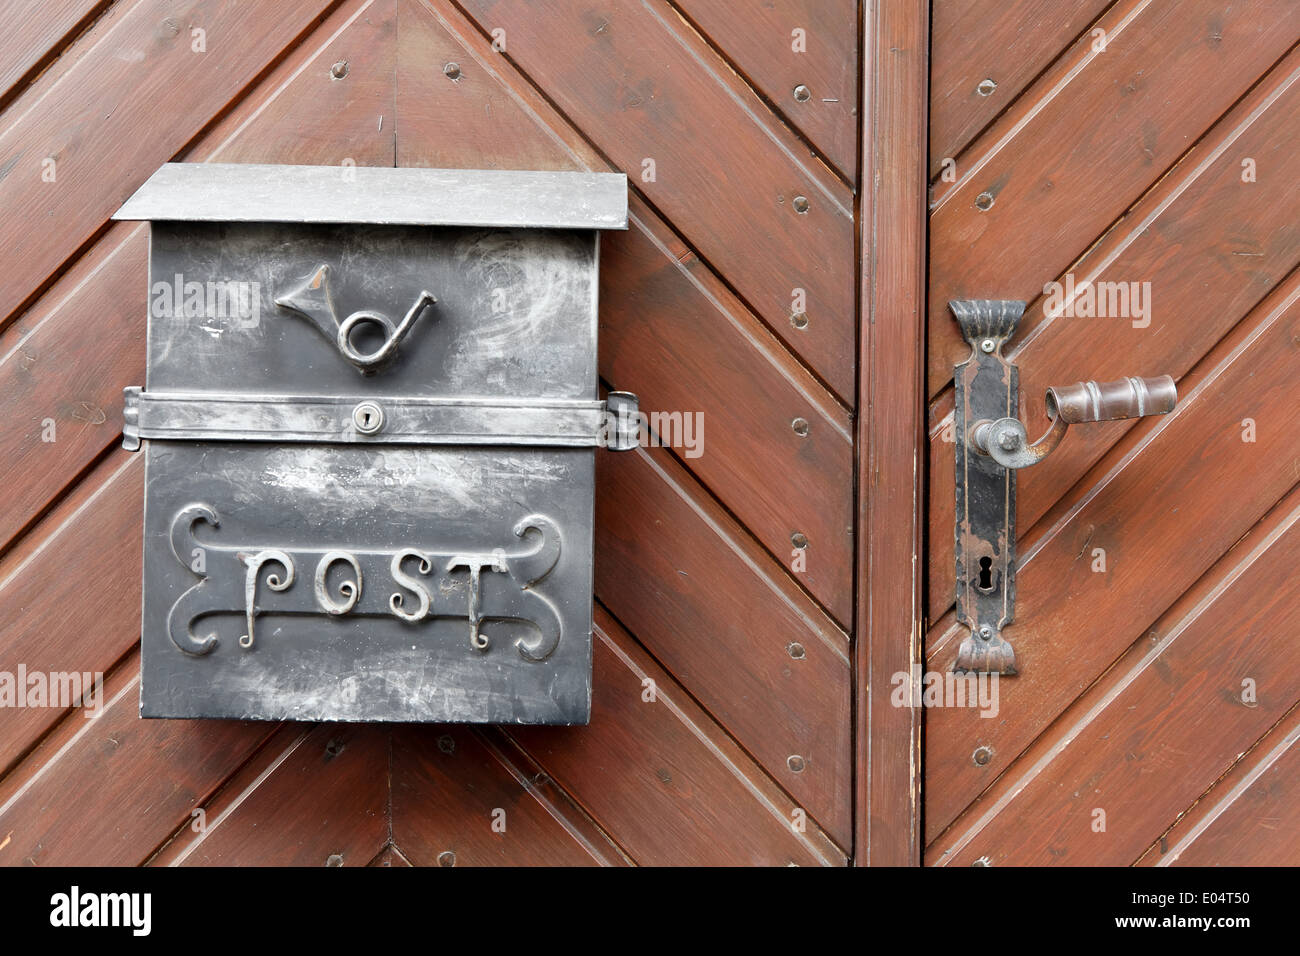 Rustic iron mail box on a wood performs statute labour door, Rustikaler Eisenbriefkasten auf einer Holz Eingangstuer Stock Photo